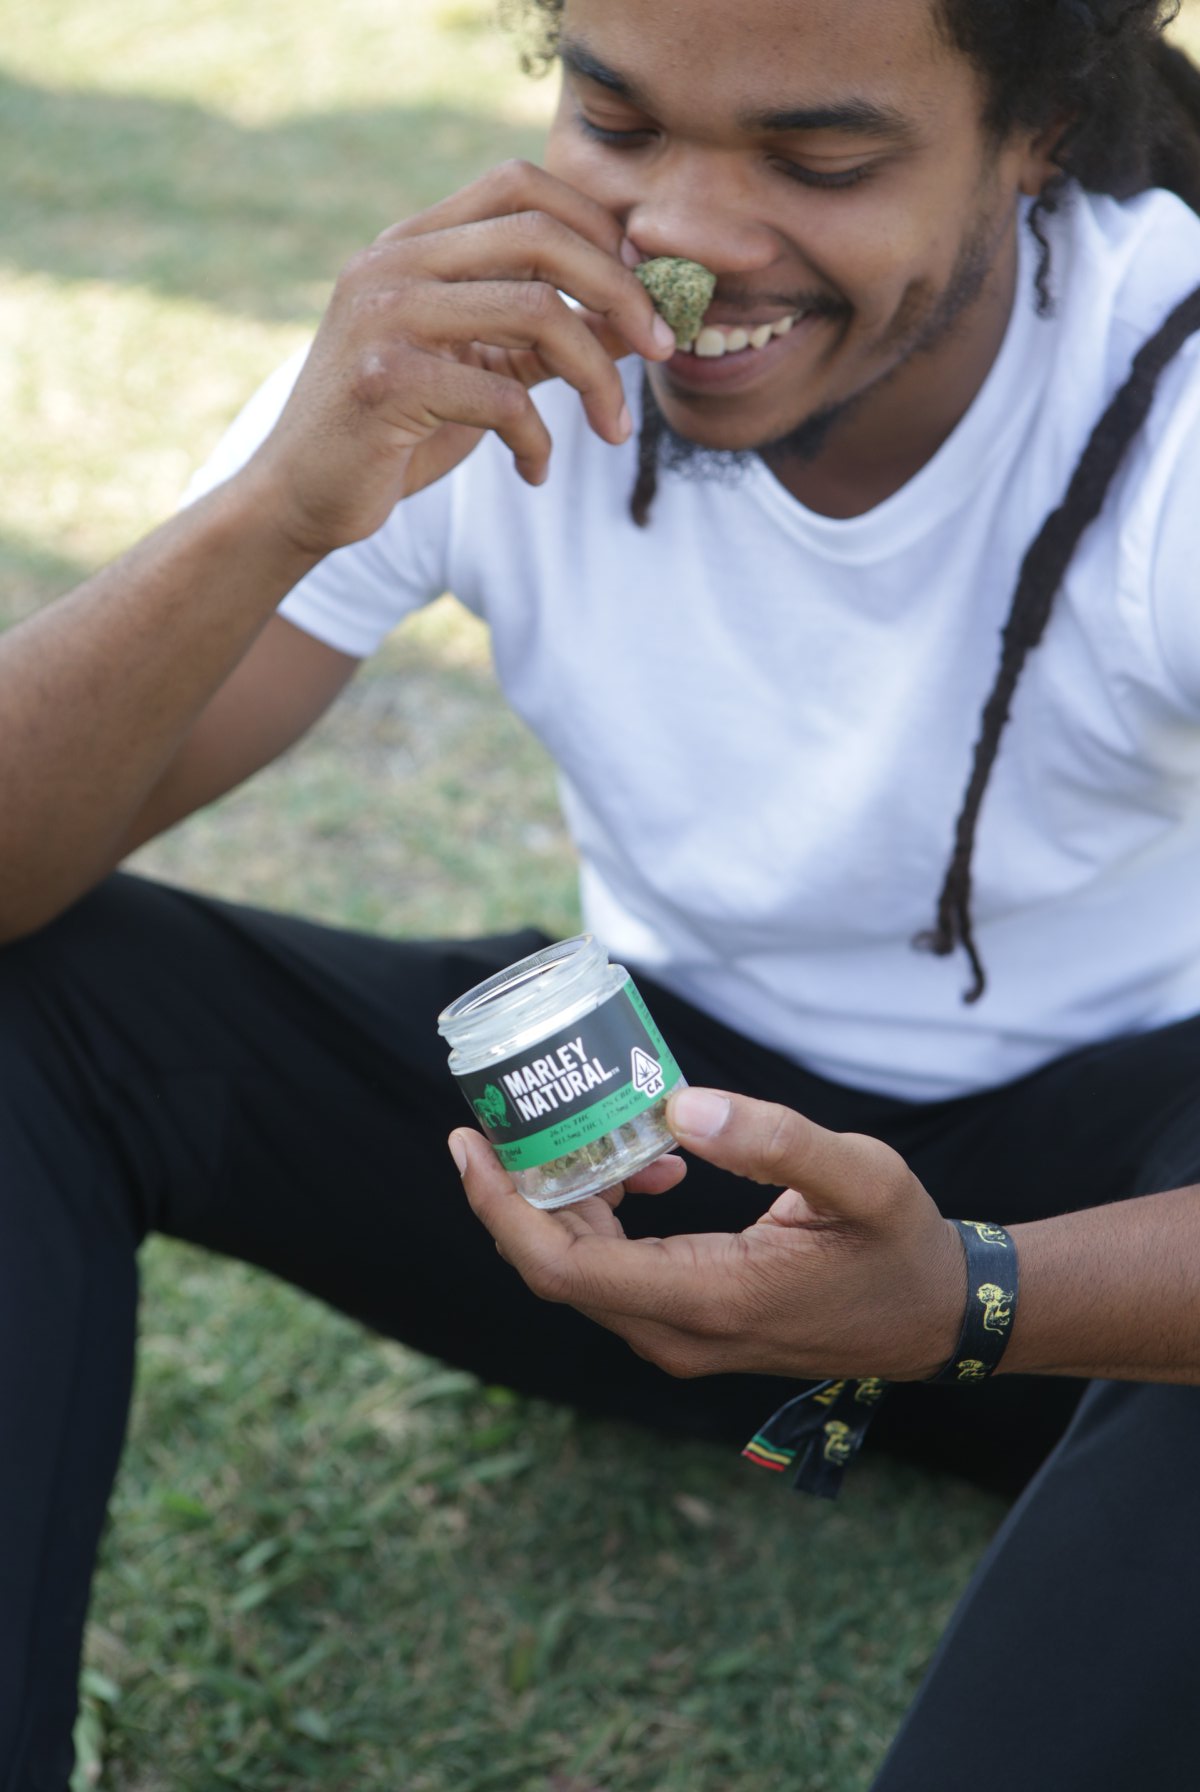 Marley Natural, the official marijuana brand of Bob Marley